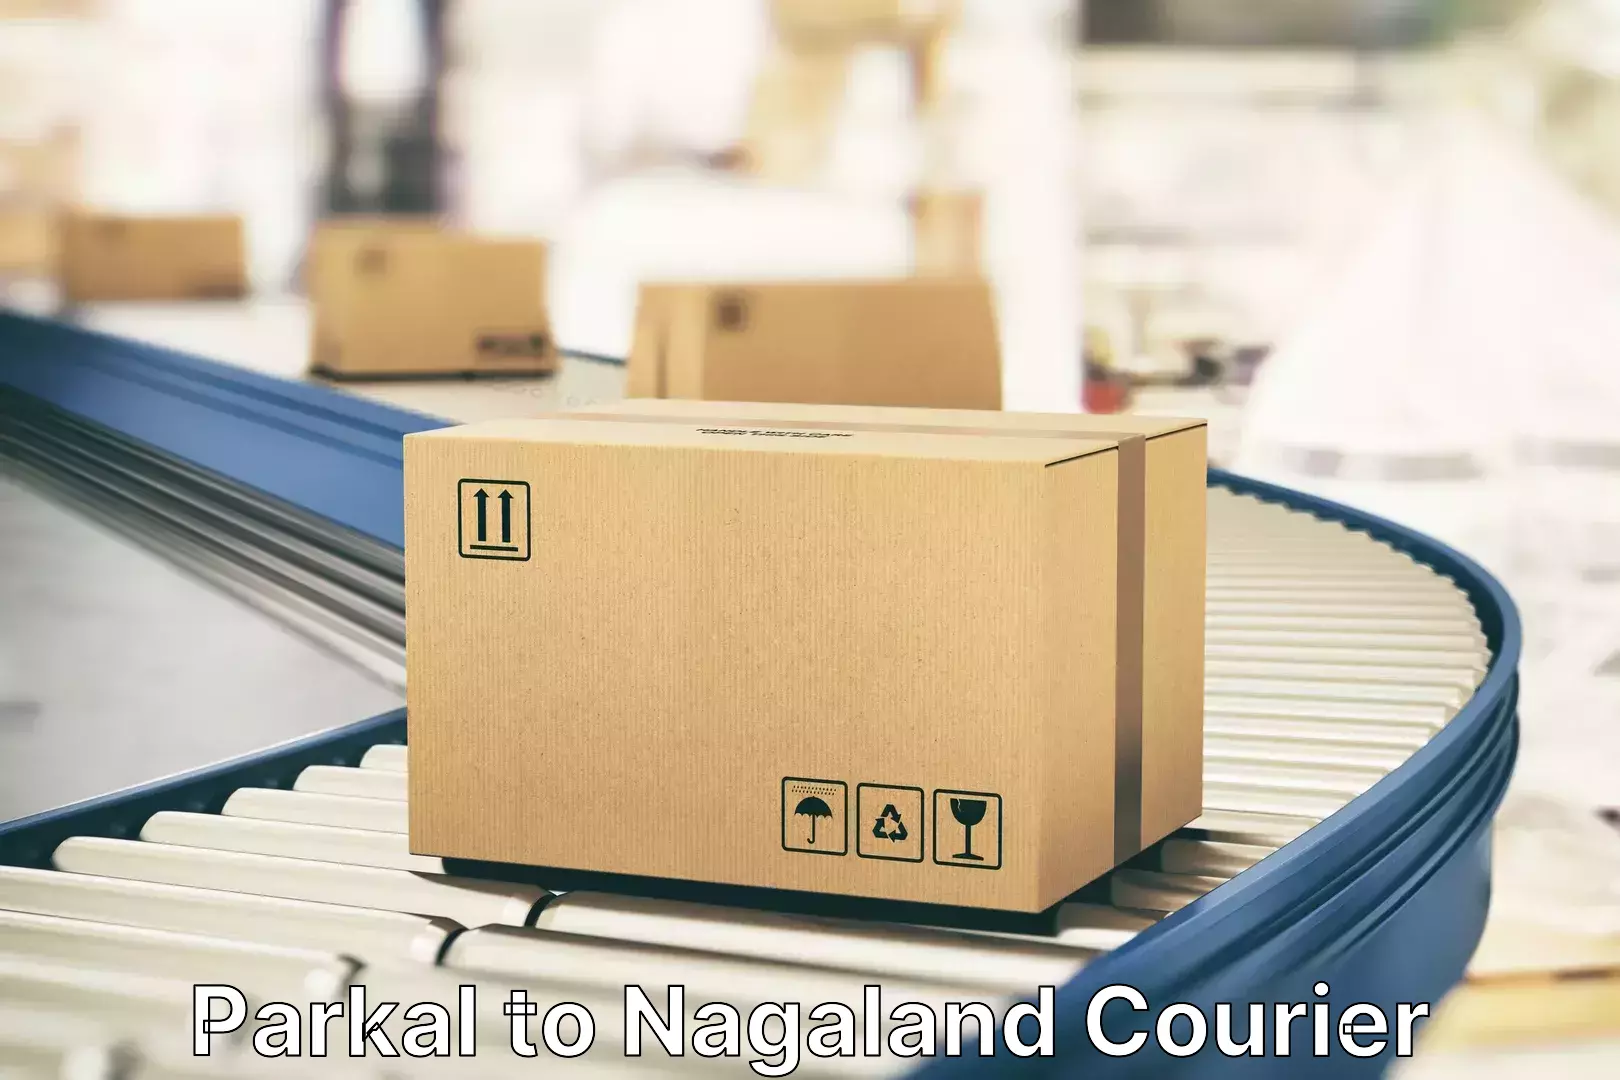 Baggage delivery management Parkal to Nagaland